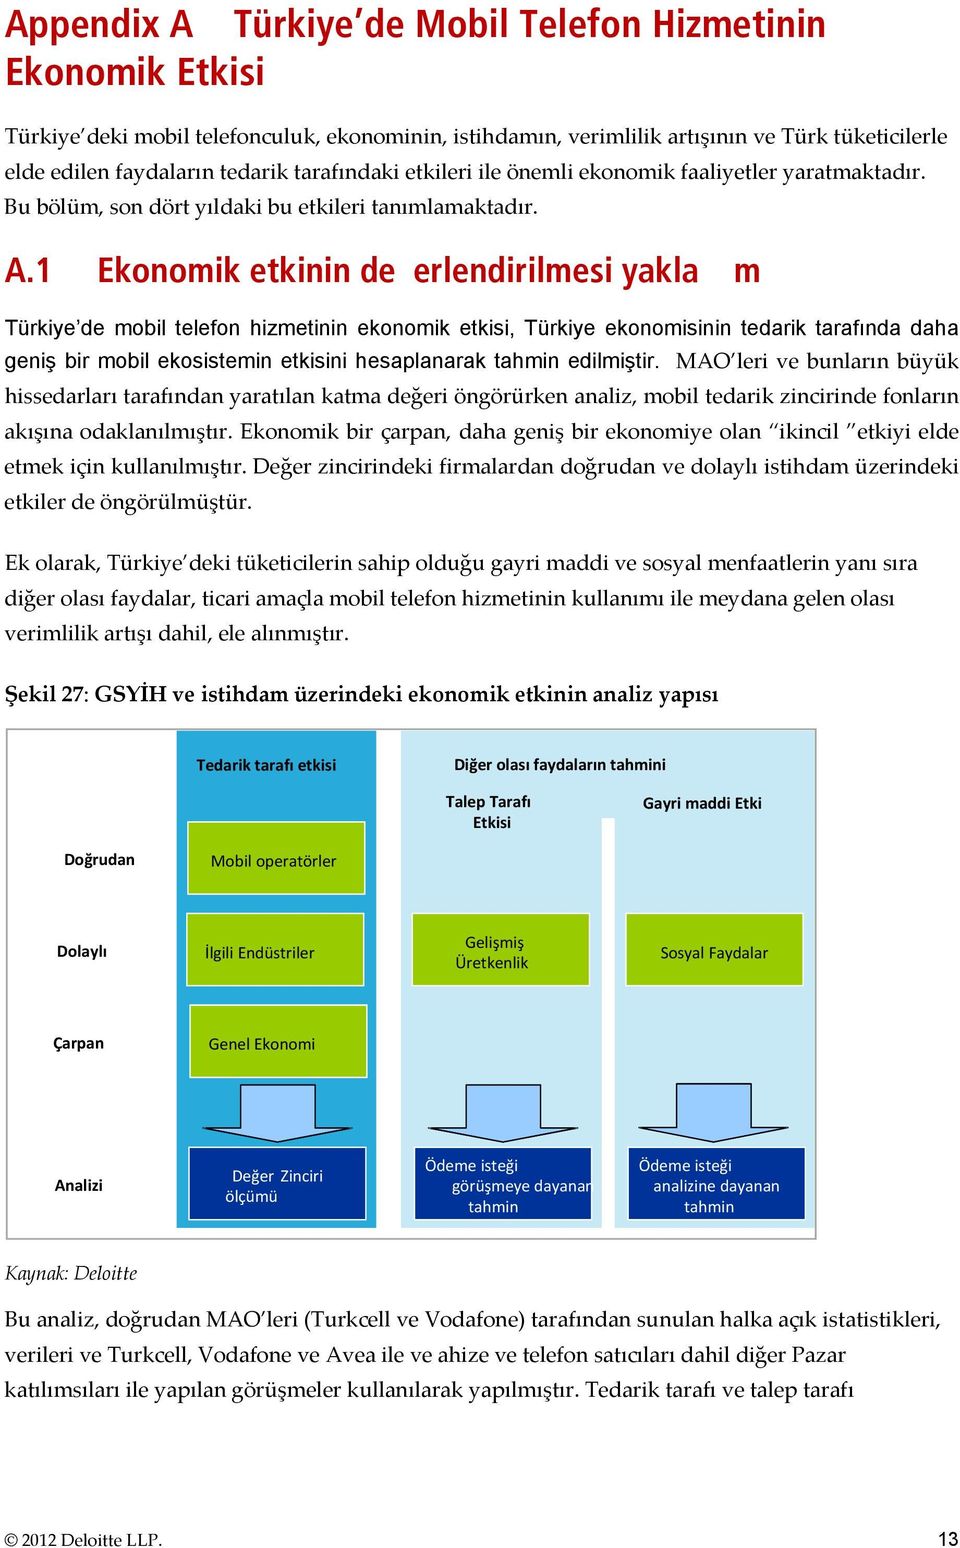 1 Ekonomik etkinin deerlendirilmesi yaklam Türkiye de mobil telefon hizmetinin ekonomik etkisi, Türkiye ekonomisinin tedarik tarafında daha geniş bir mobil ekosistemin etkisini hesaplanarak tahmin